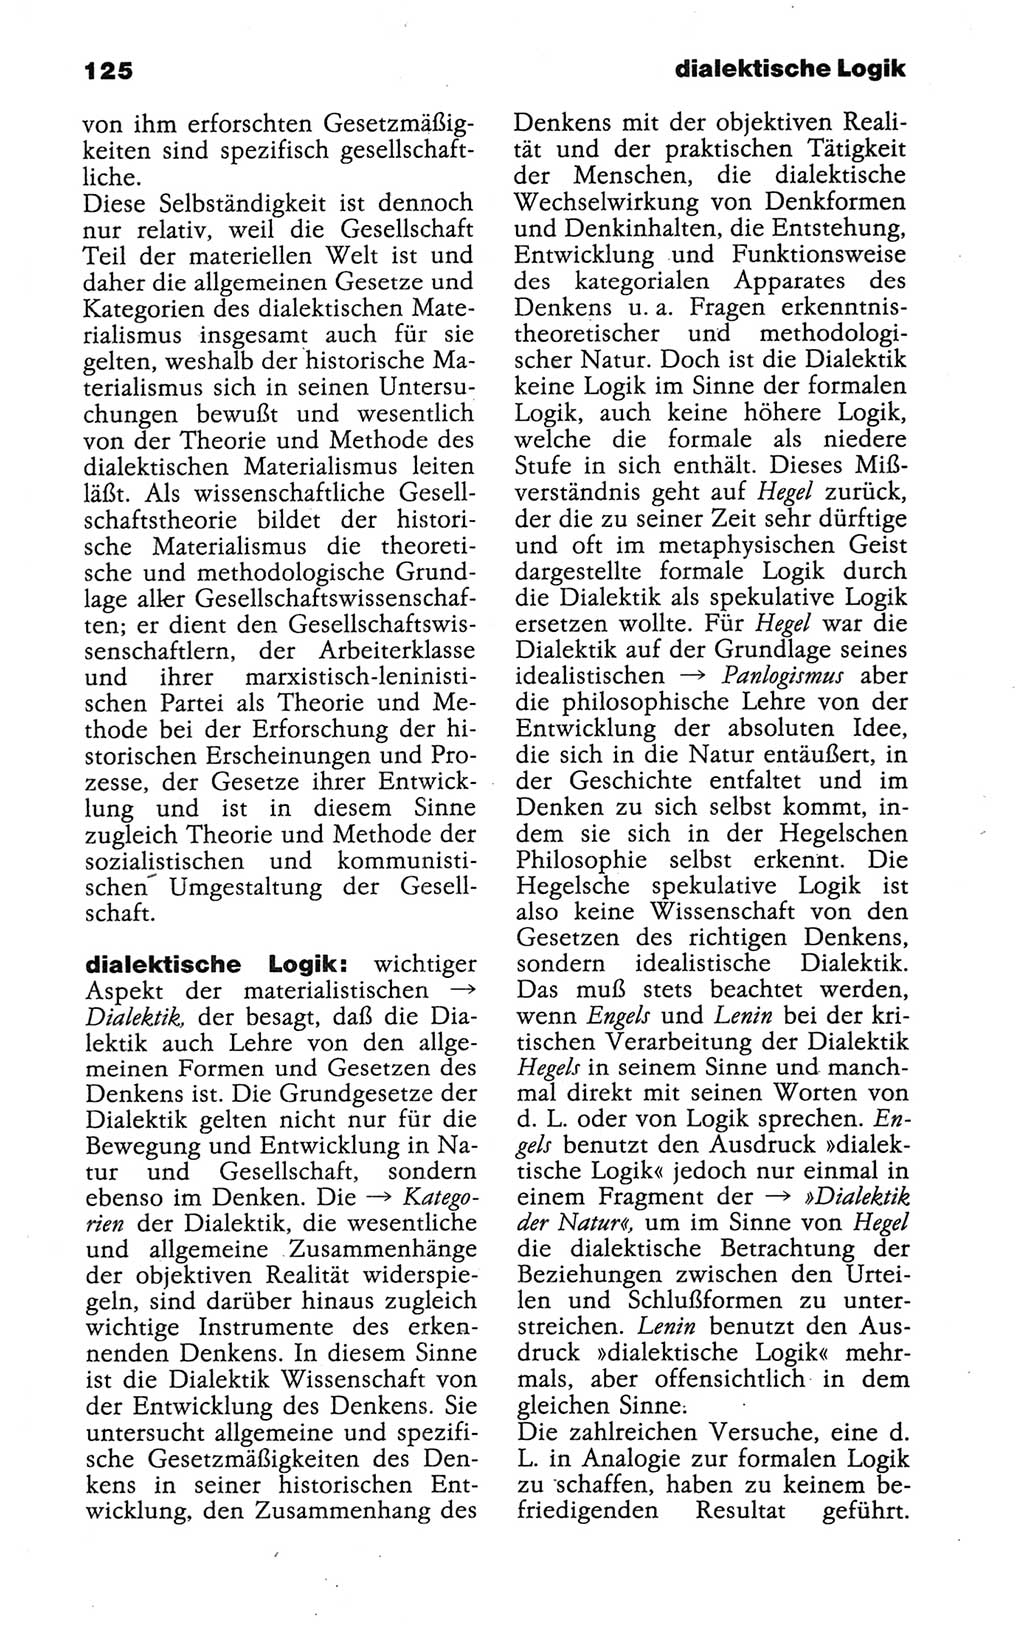 Wörterbuch der marxistisch-leninistischen Philosophie [Deutsche Demokratische Republik (DDR)] 1986, Seite 125 (Wb. ML Phil. DDR 1986, S. 125)